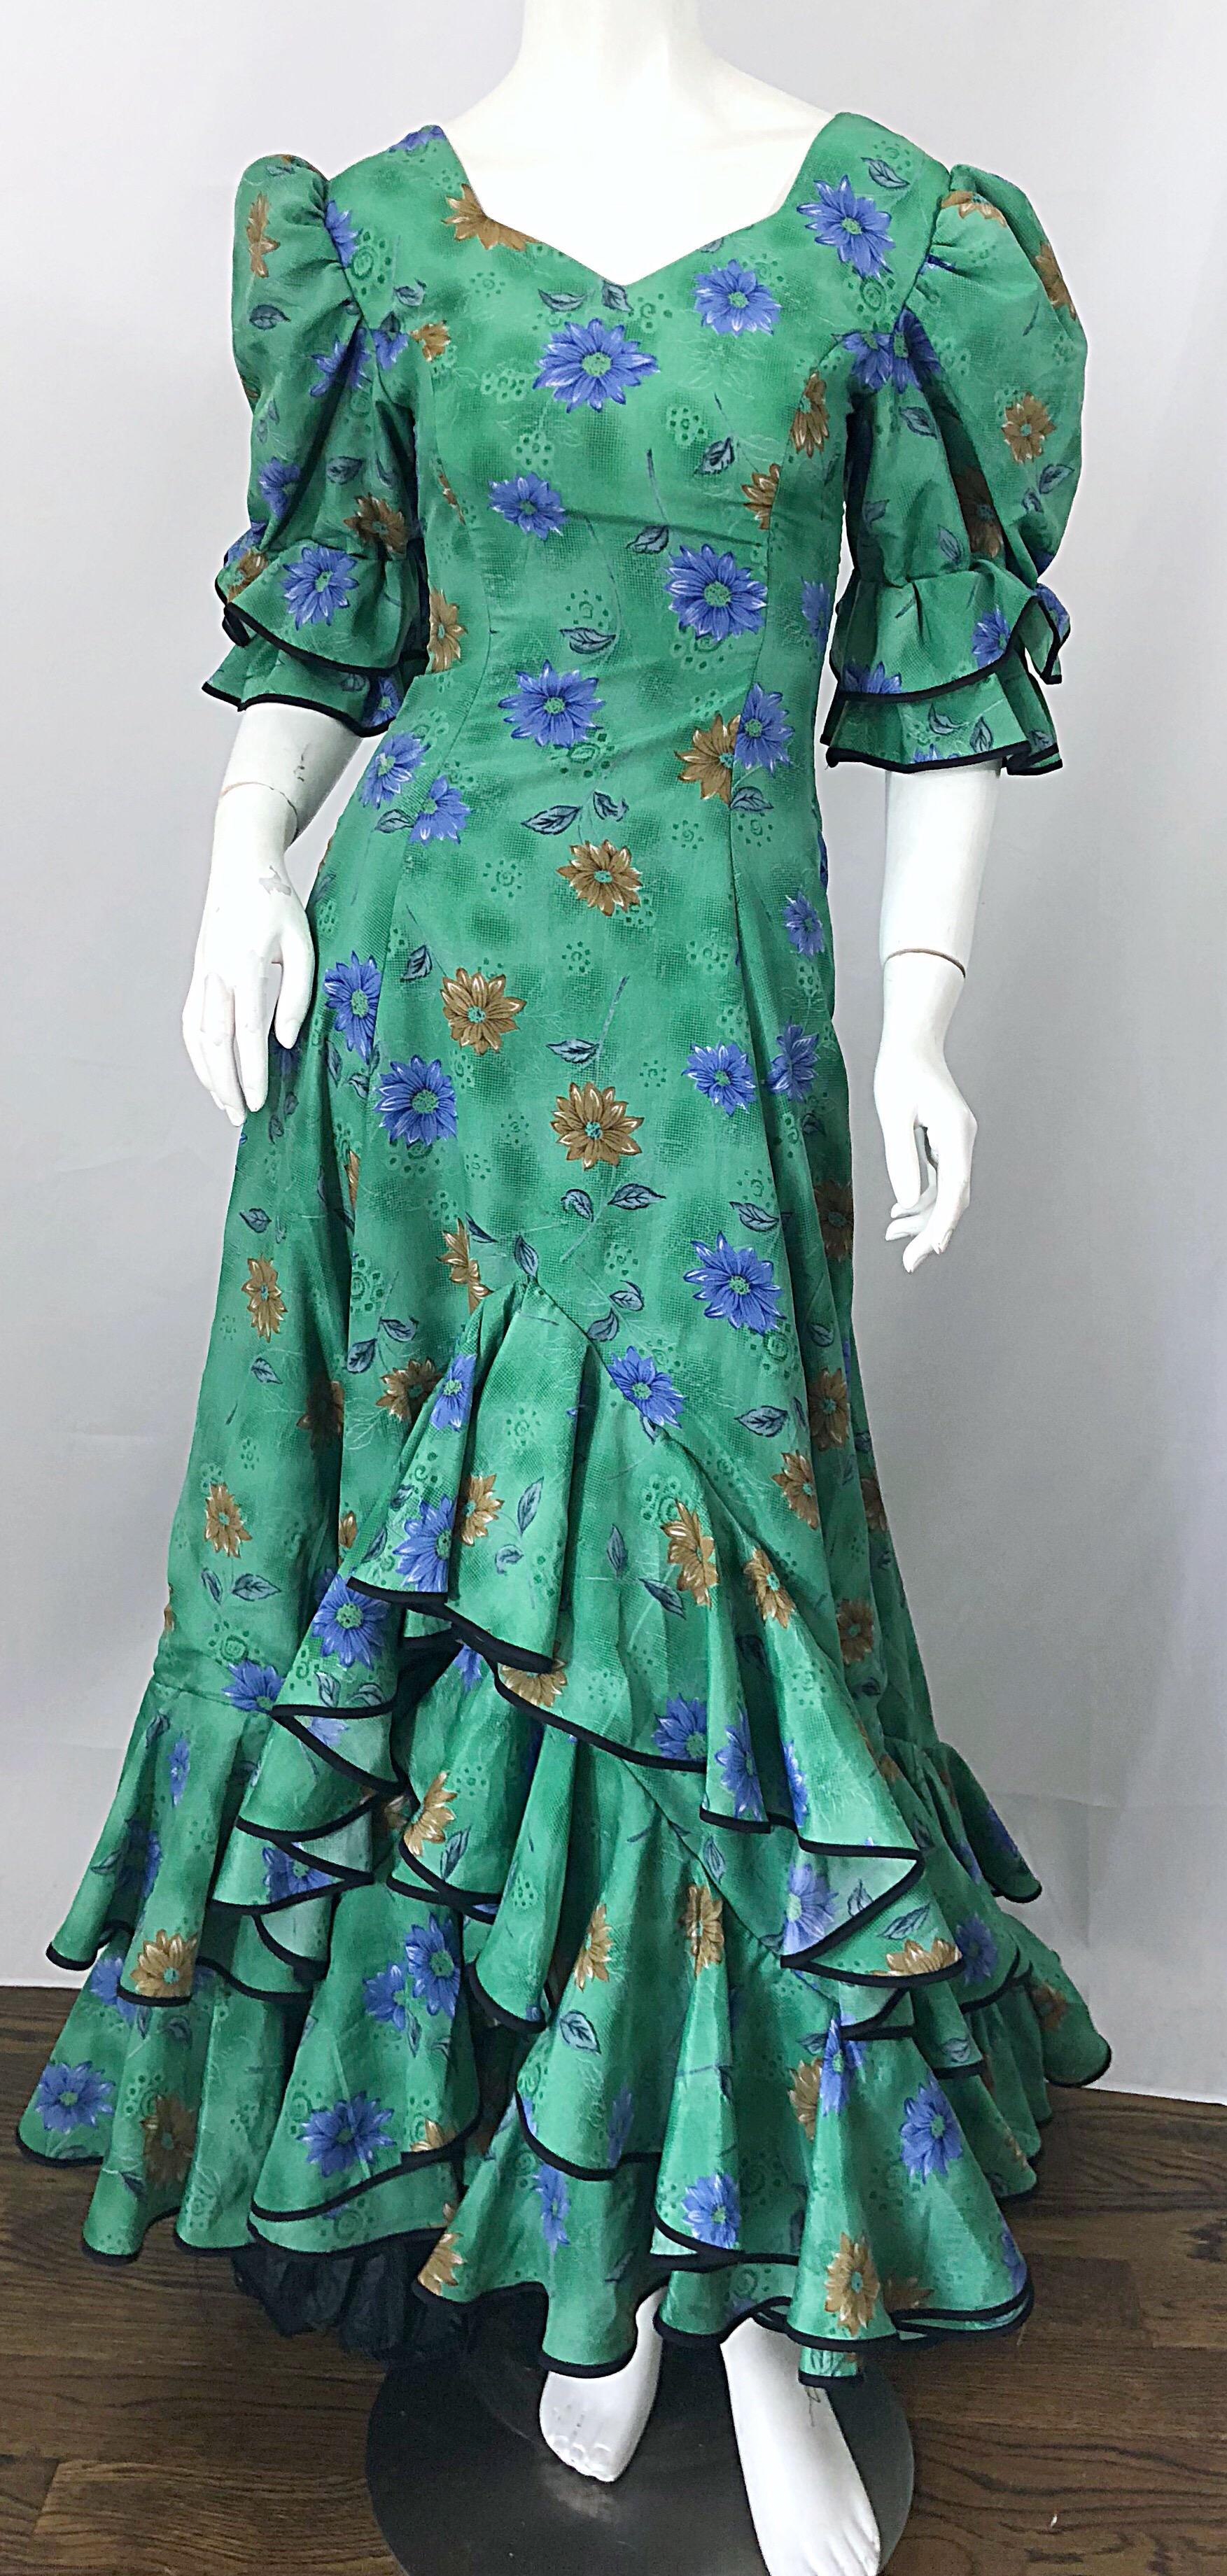 Erstaunlich Vintage viktorianisch inspiriert 70s tut 1800s grün Steampunk trainiert Kleid! Es hat eine schöne grüne Farbe mit blauen und braunen Blumen. Schicke Puffärmel und ein dramatischer langer Rüschensaum. Die Rüschen am Saum und an den